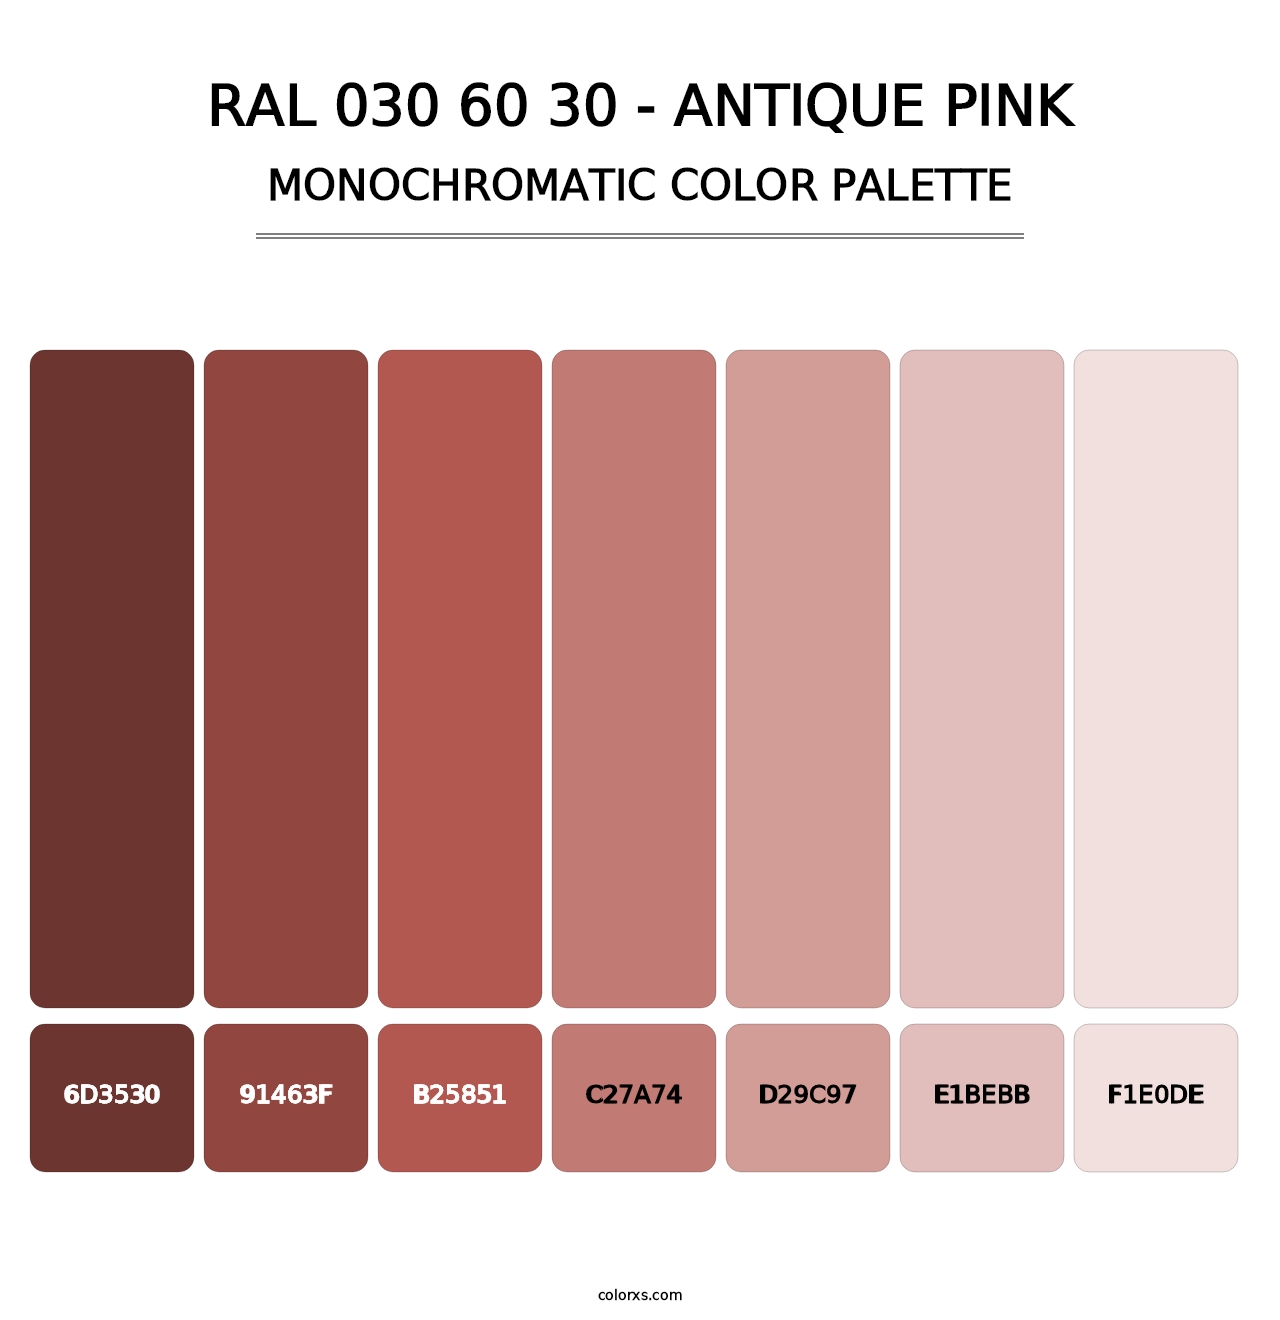 RAL 030 60 30 - Antique Pink - Monochromatic Color Palette